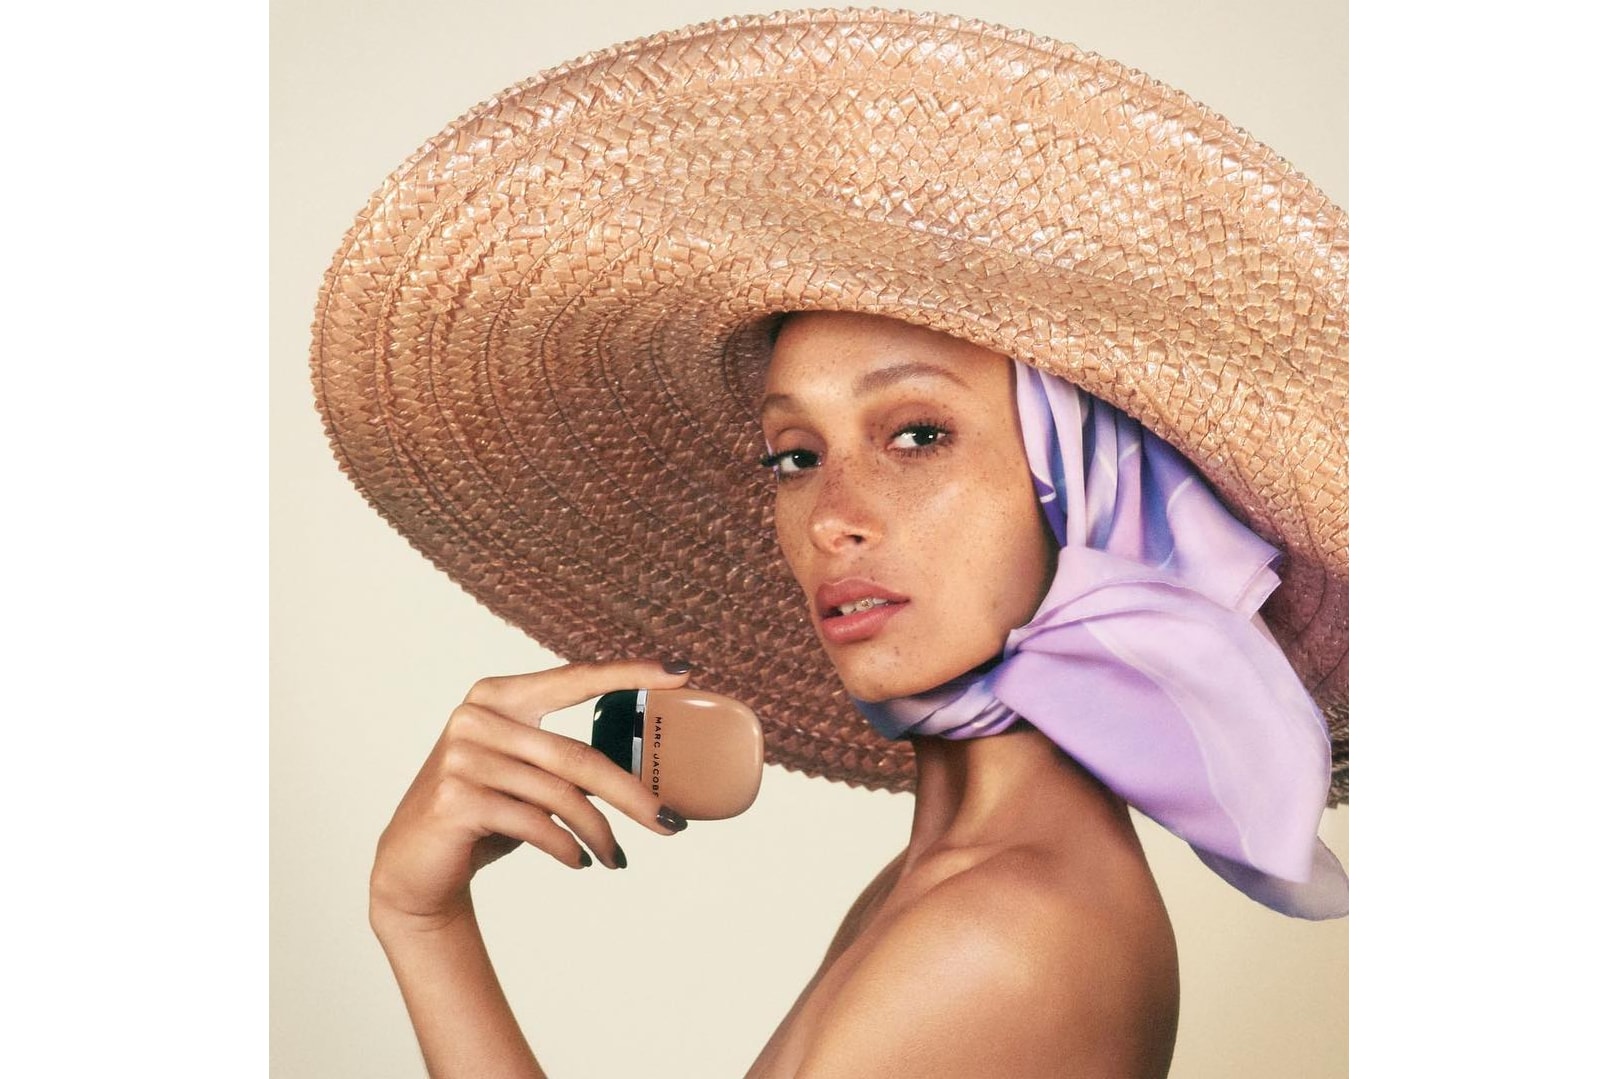 Adwoa Aboah Marc Jacobs Beauty "Shameless" Foundation Makeup Ad Campaign